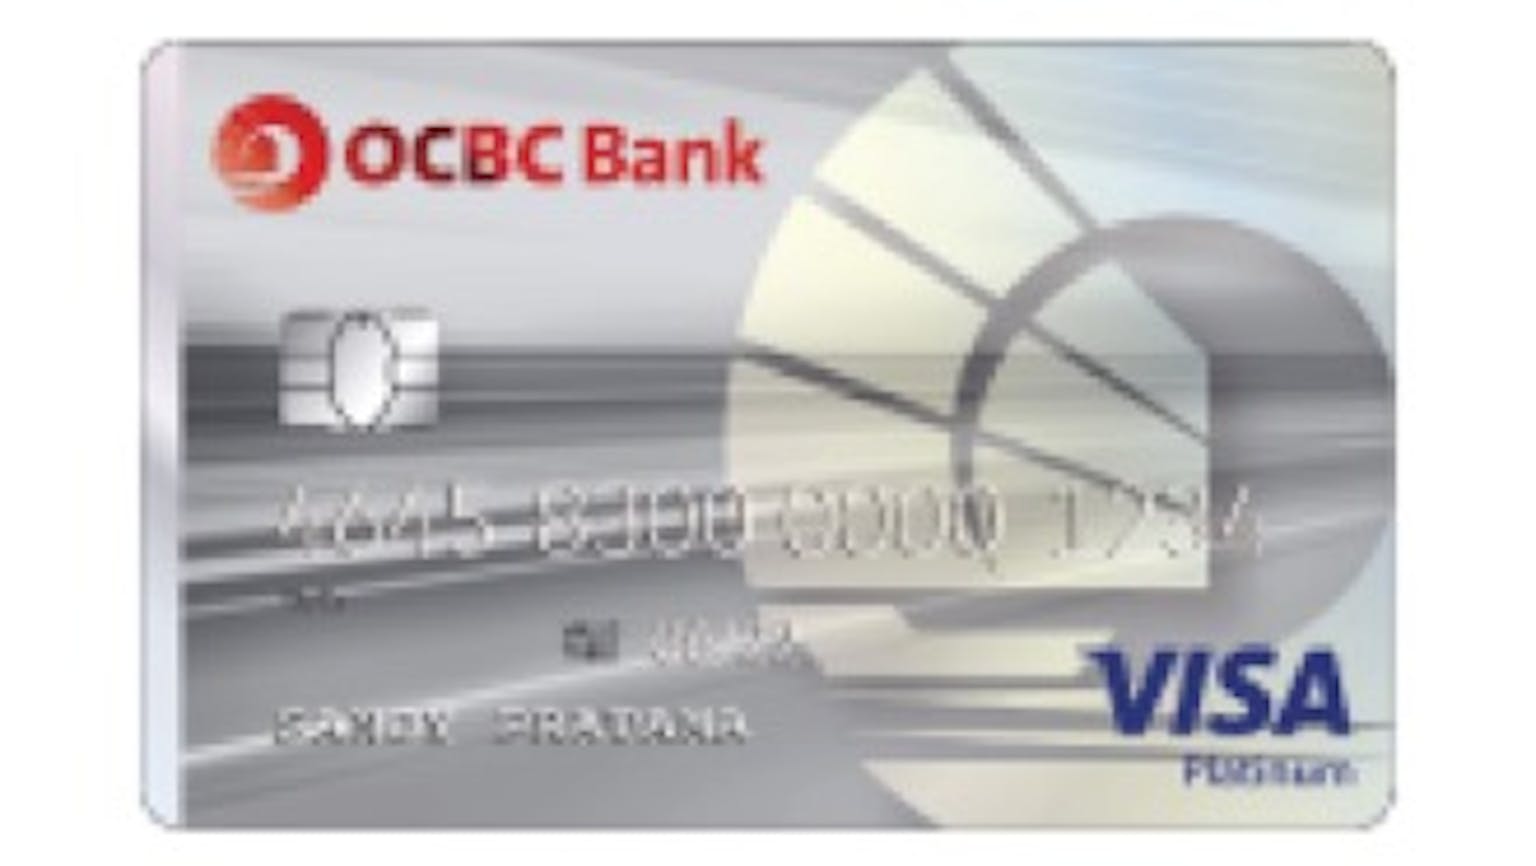 OCBC NISP VISA Platinum